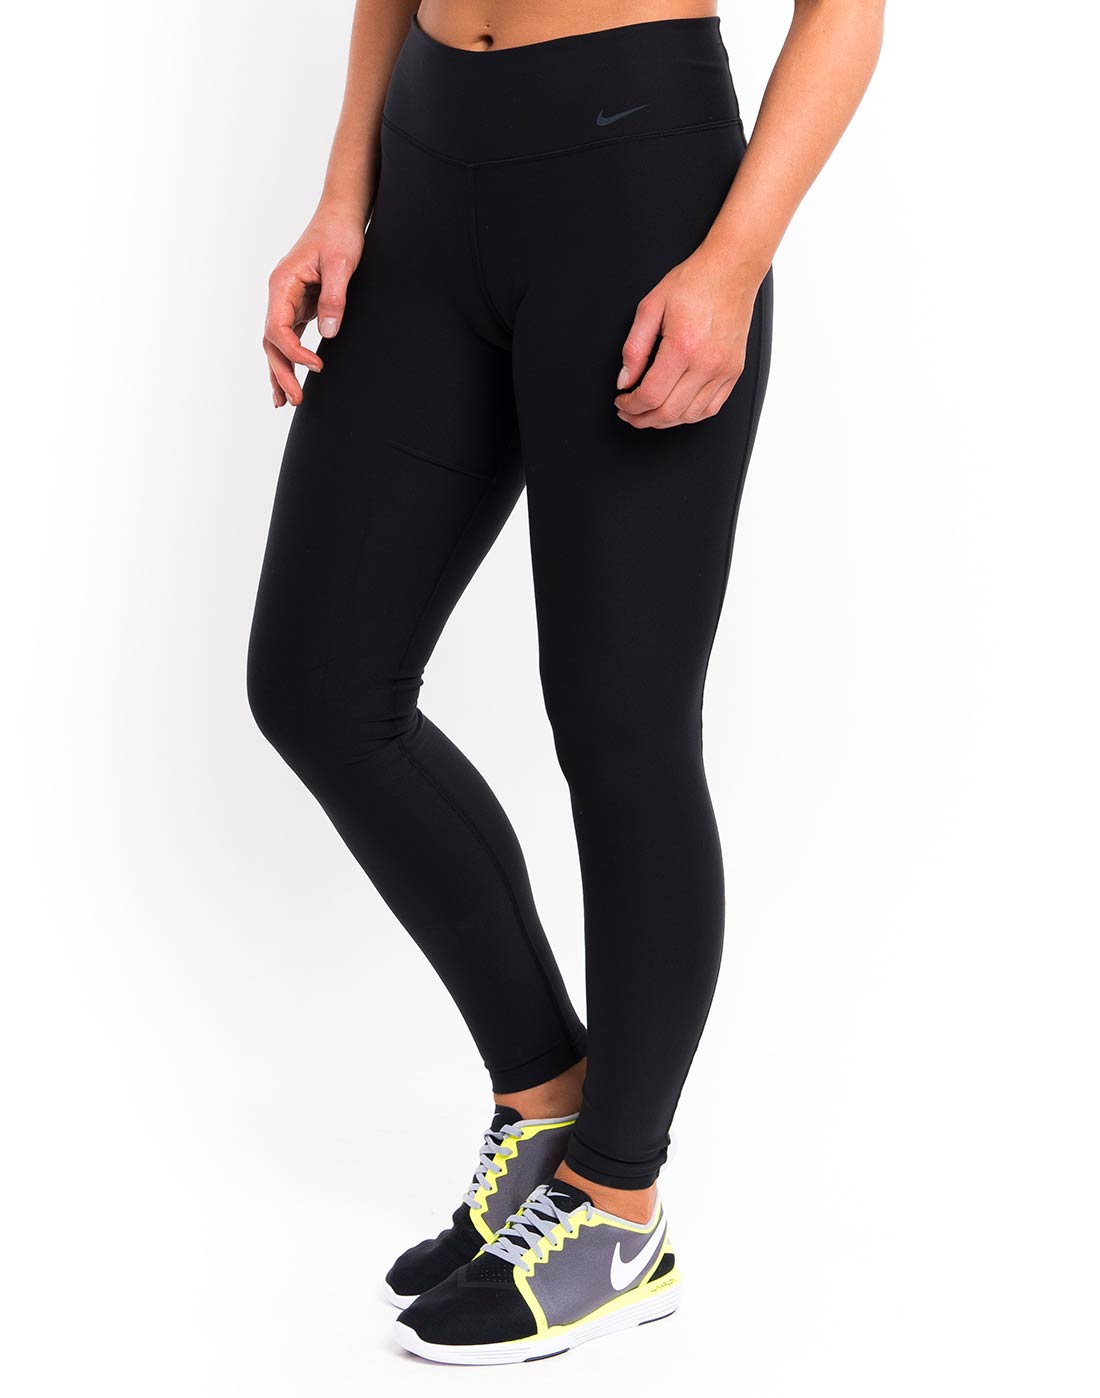 Nike Womens Legend Tight Pant - Black 